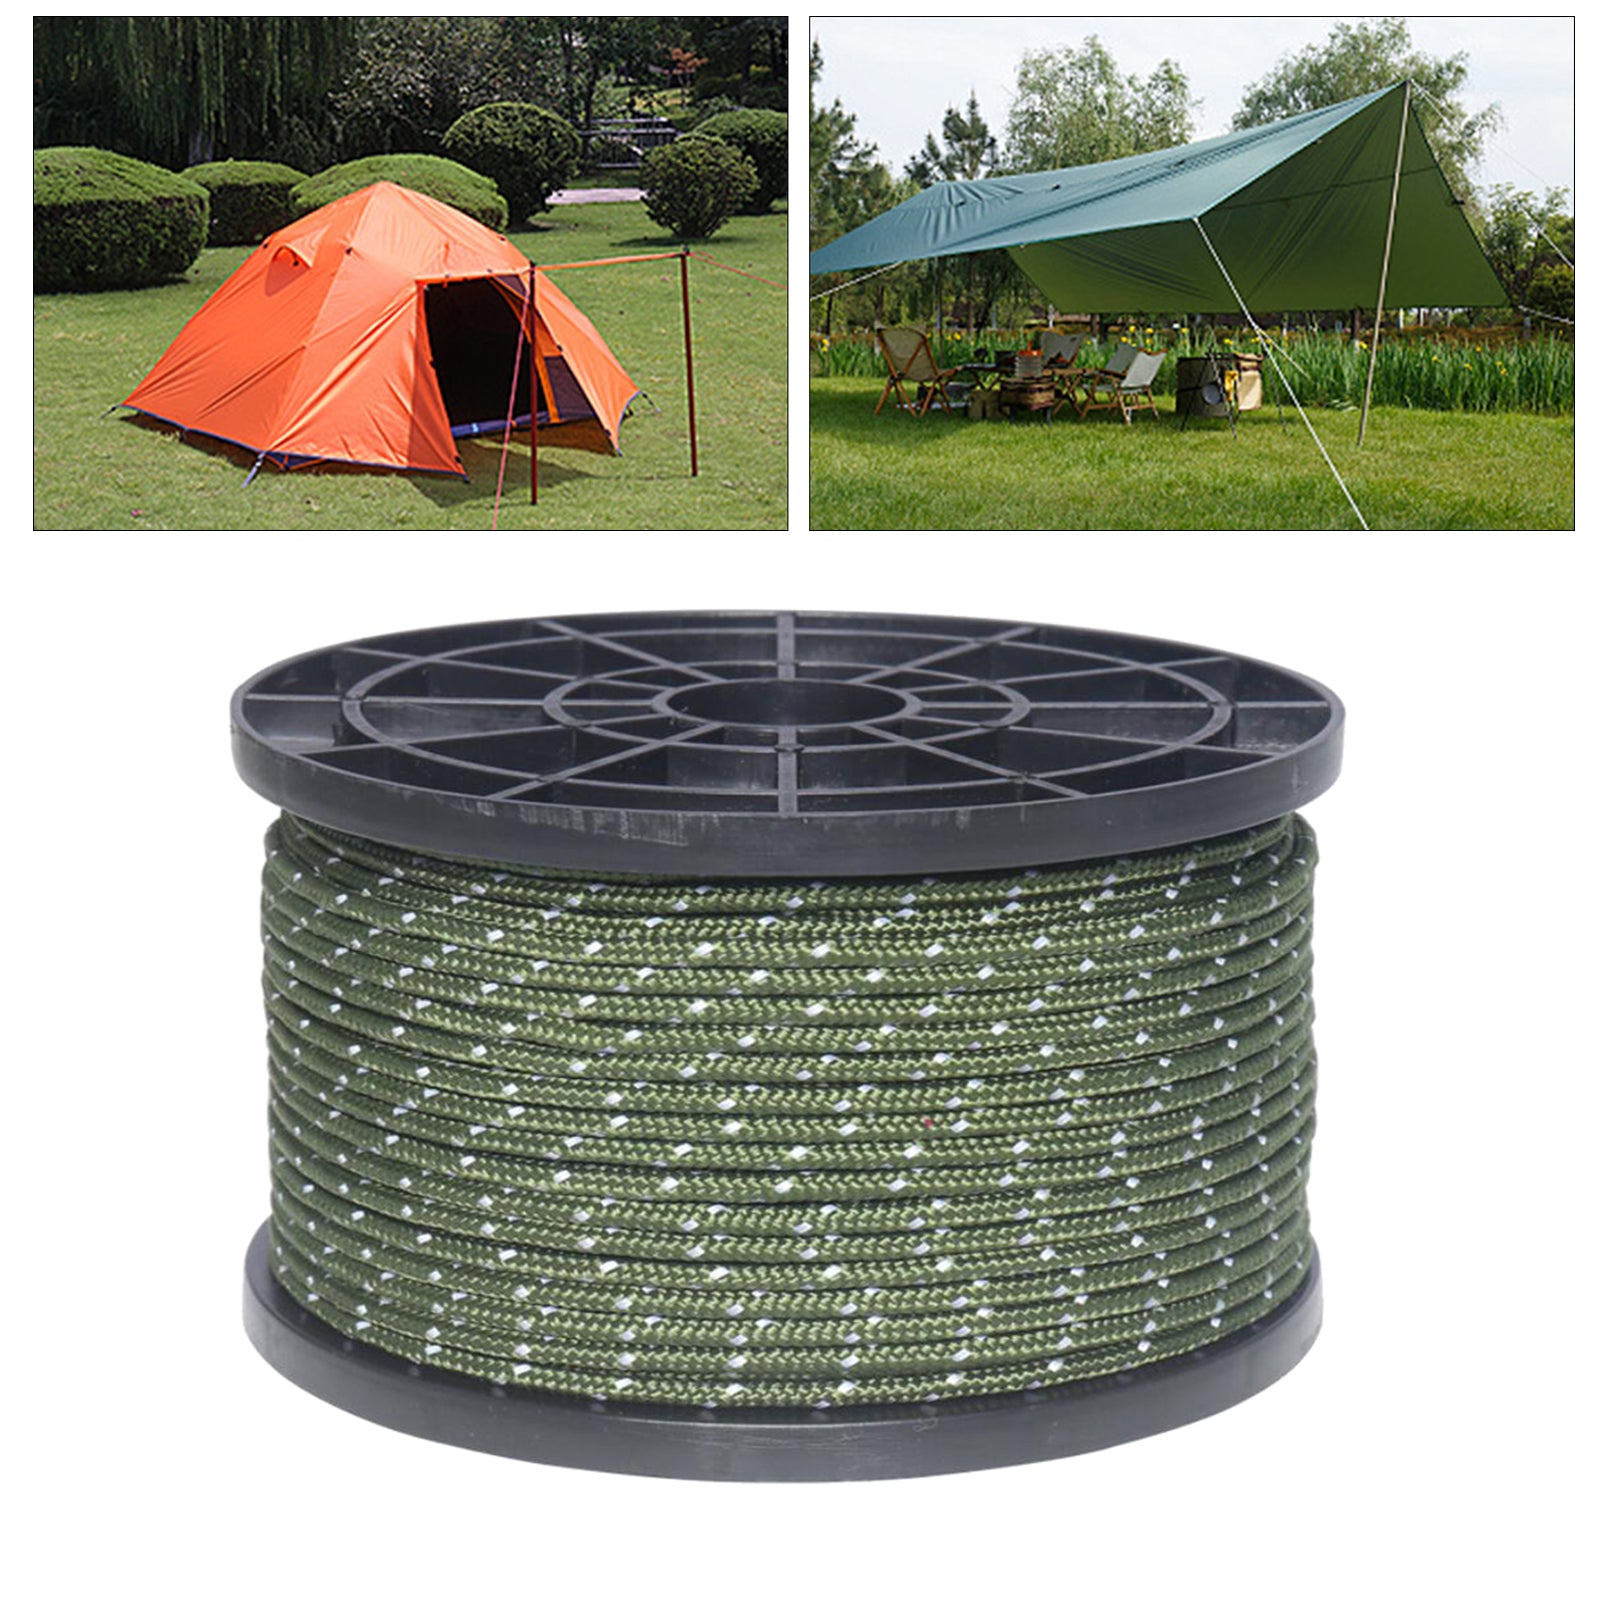 55 Yard Nylon Reflective Guyline 6 Strand Tent Awning Gazebo Tarp Sun Shade Hiking Accessories 3mm - Green